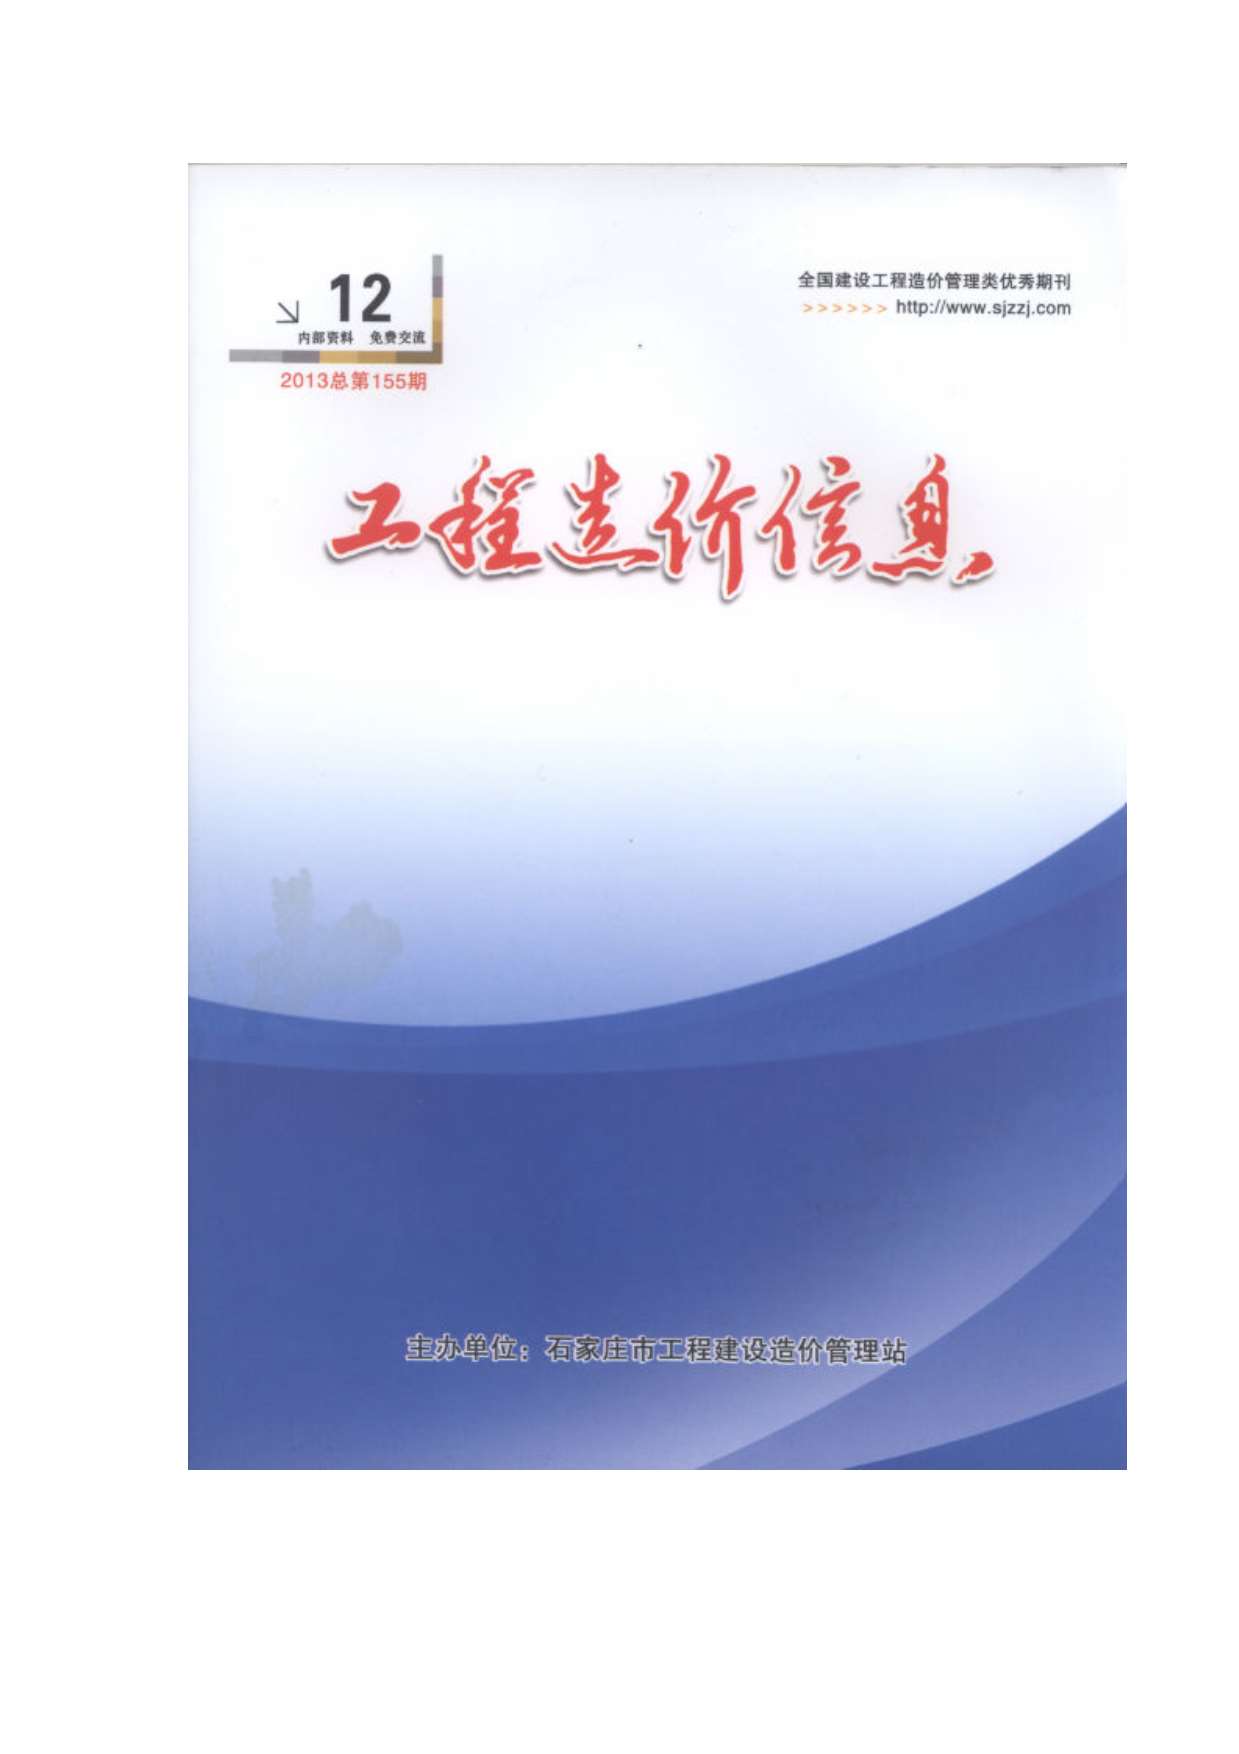 石家庄市2013年12月工程信息价_石家庄市信息价期刊PDF扫描件电子版